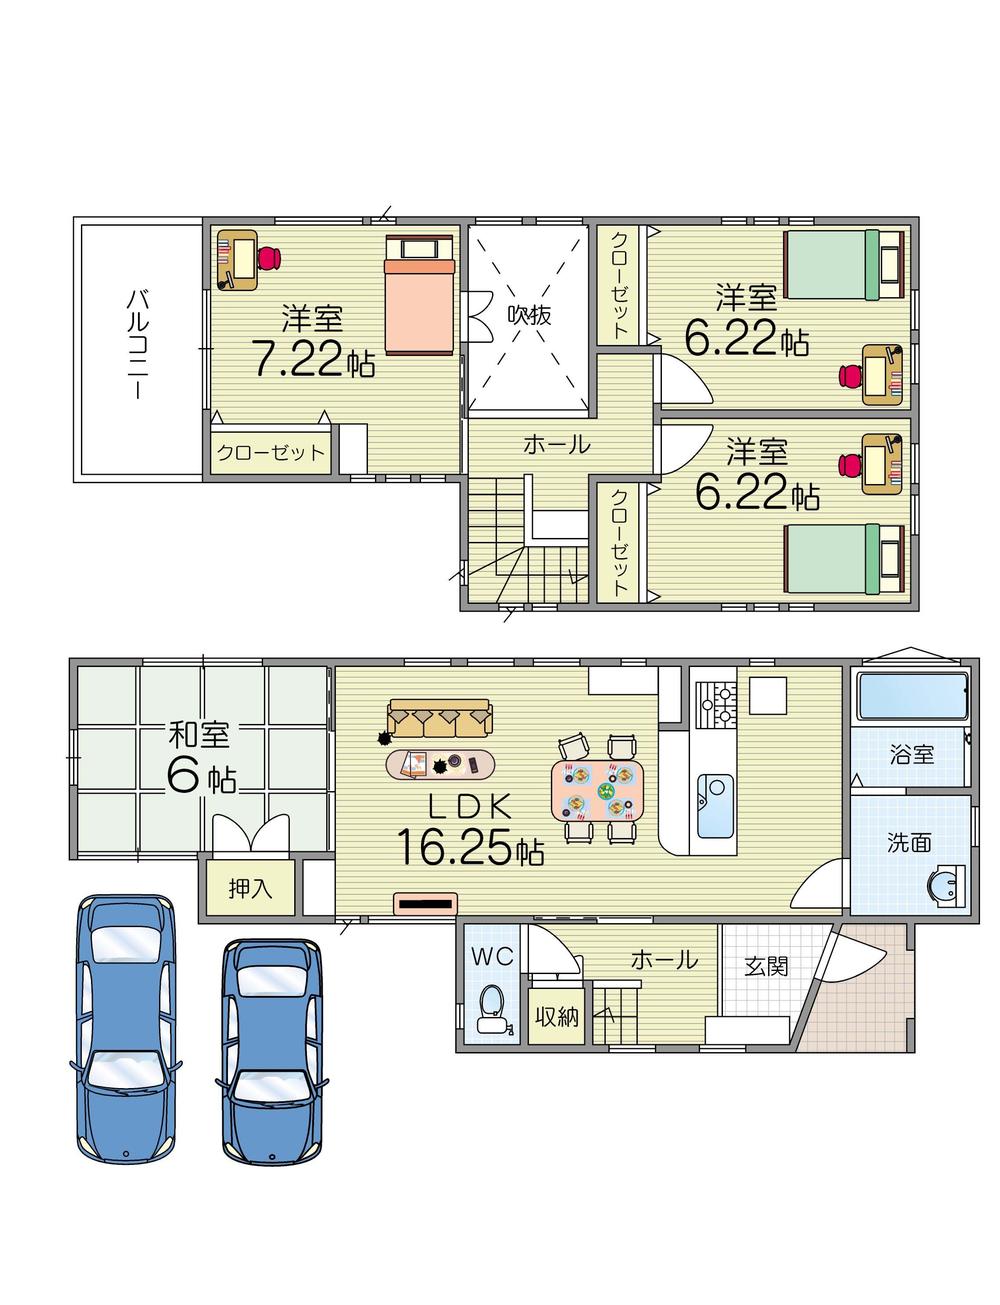 Floor plan. 22,998,000 yen, 4LDK, Land area 100.91 sq m , Building area 94.77 sq m floor plan here